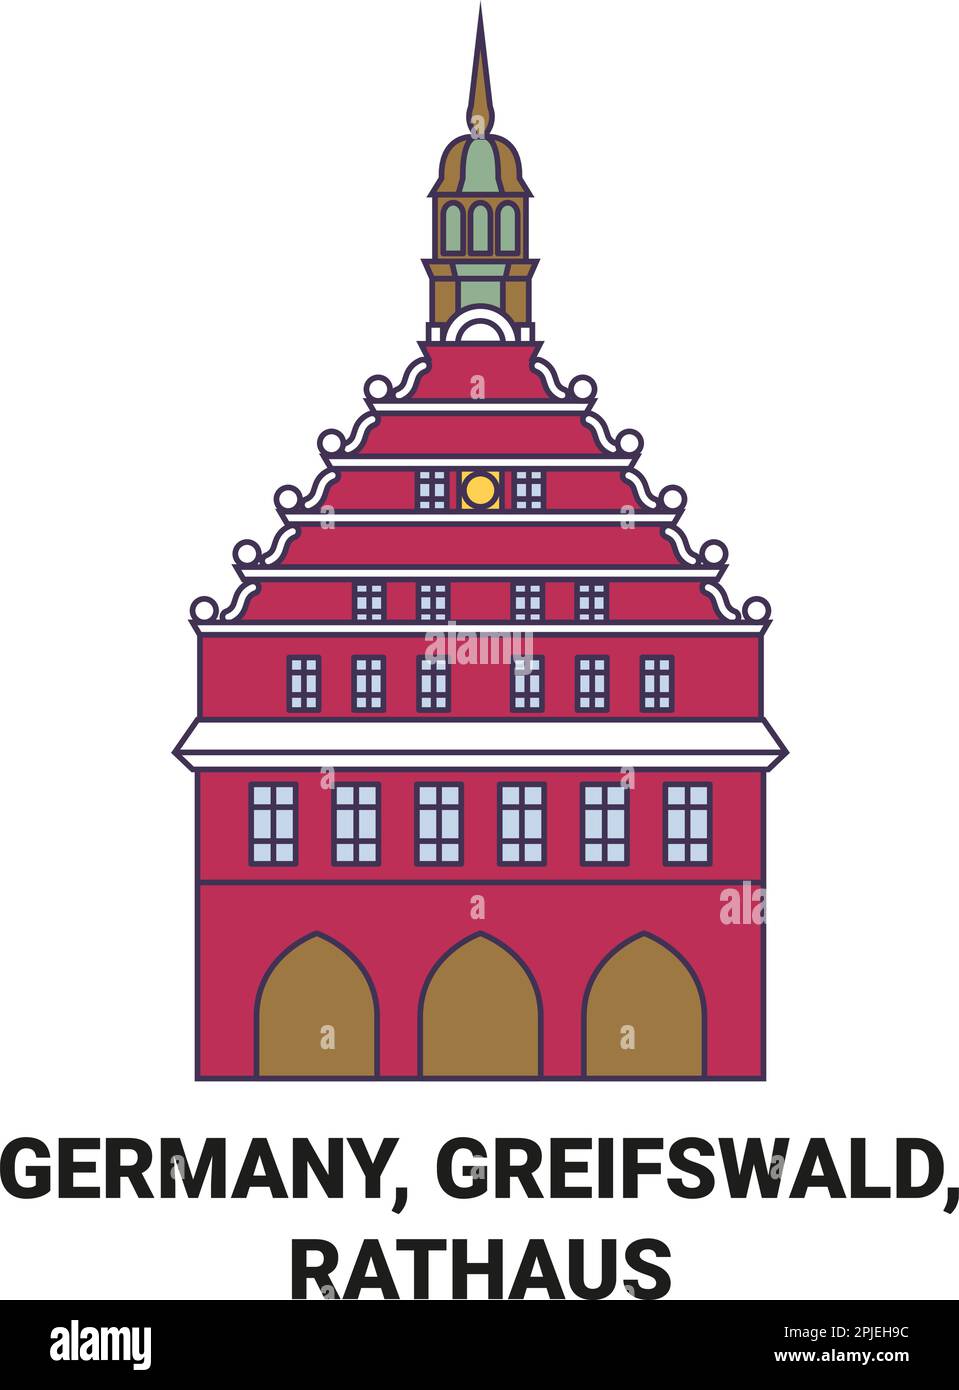 Deutschland, Greifswald, Rathaus Reise-Wahrzeichen-Vektordarstellung Stock Vektor